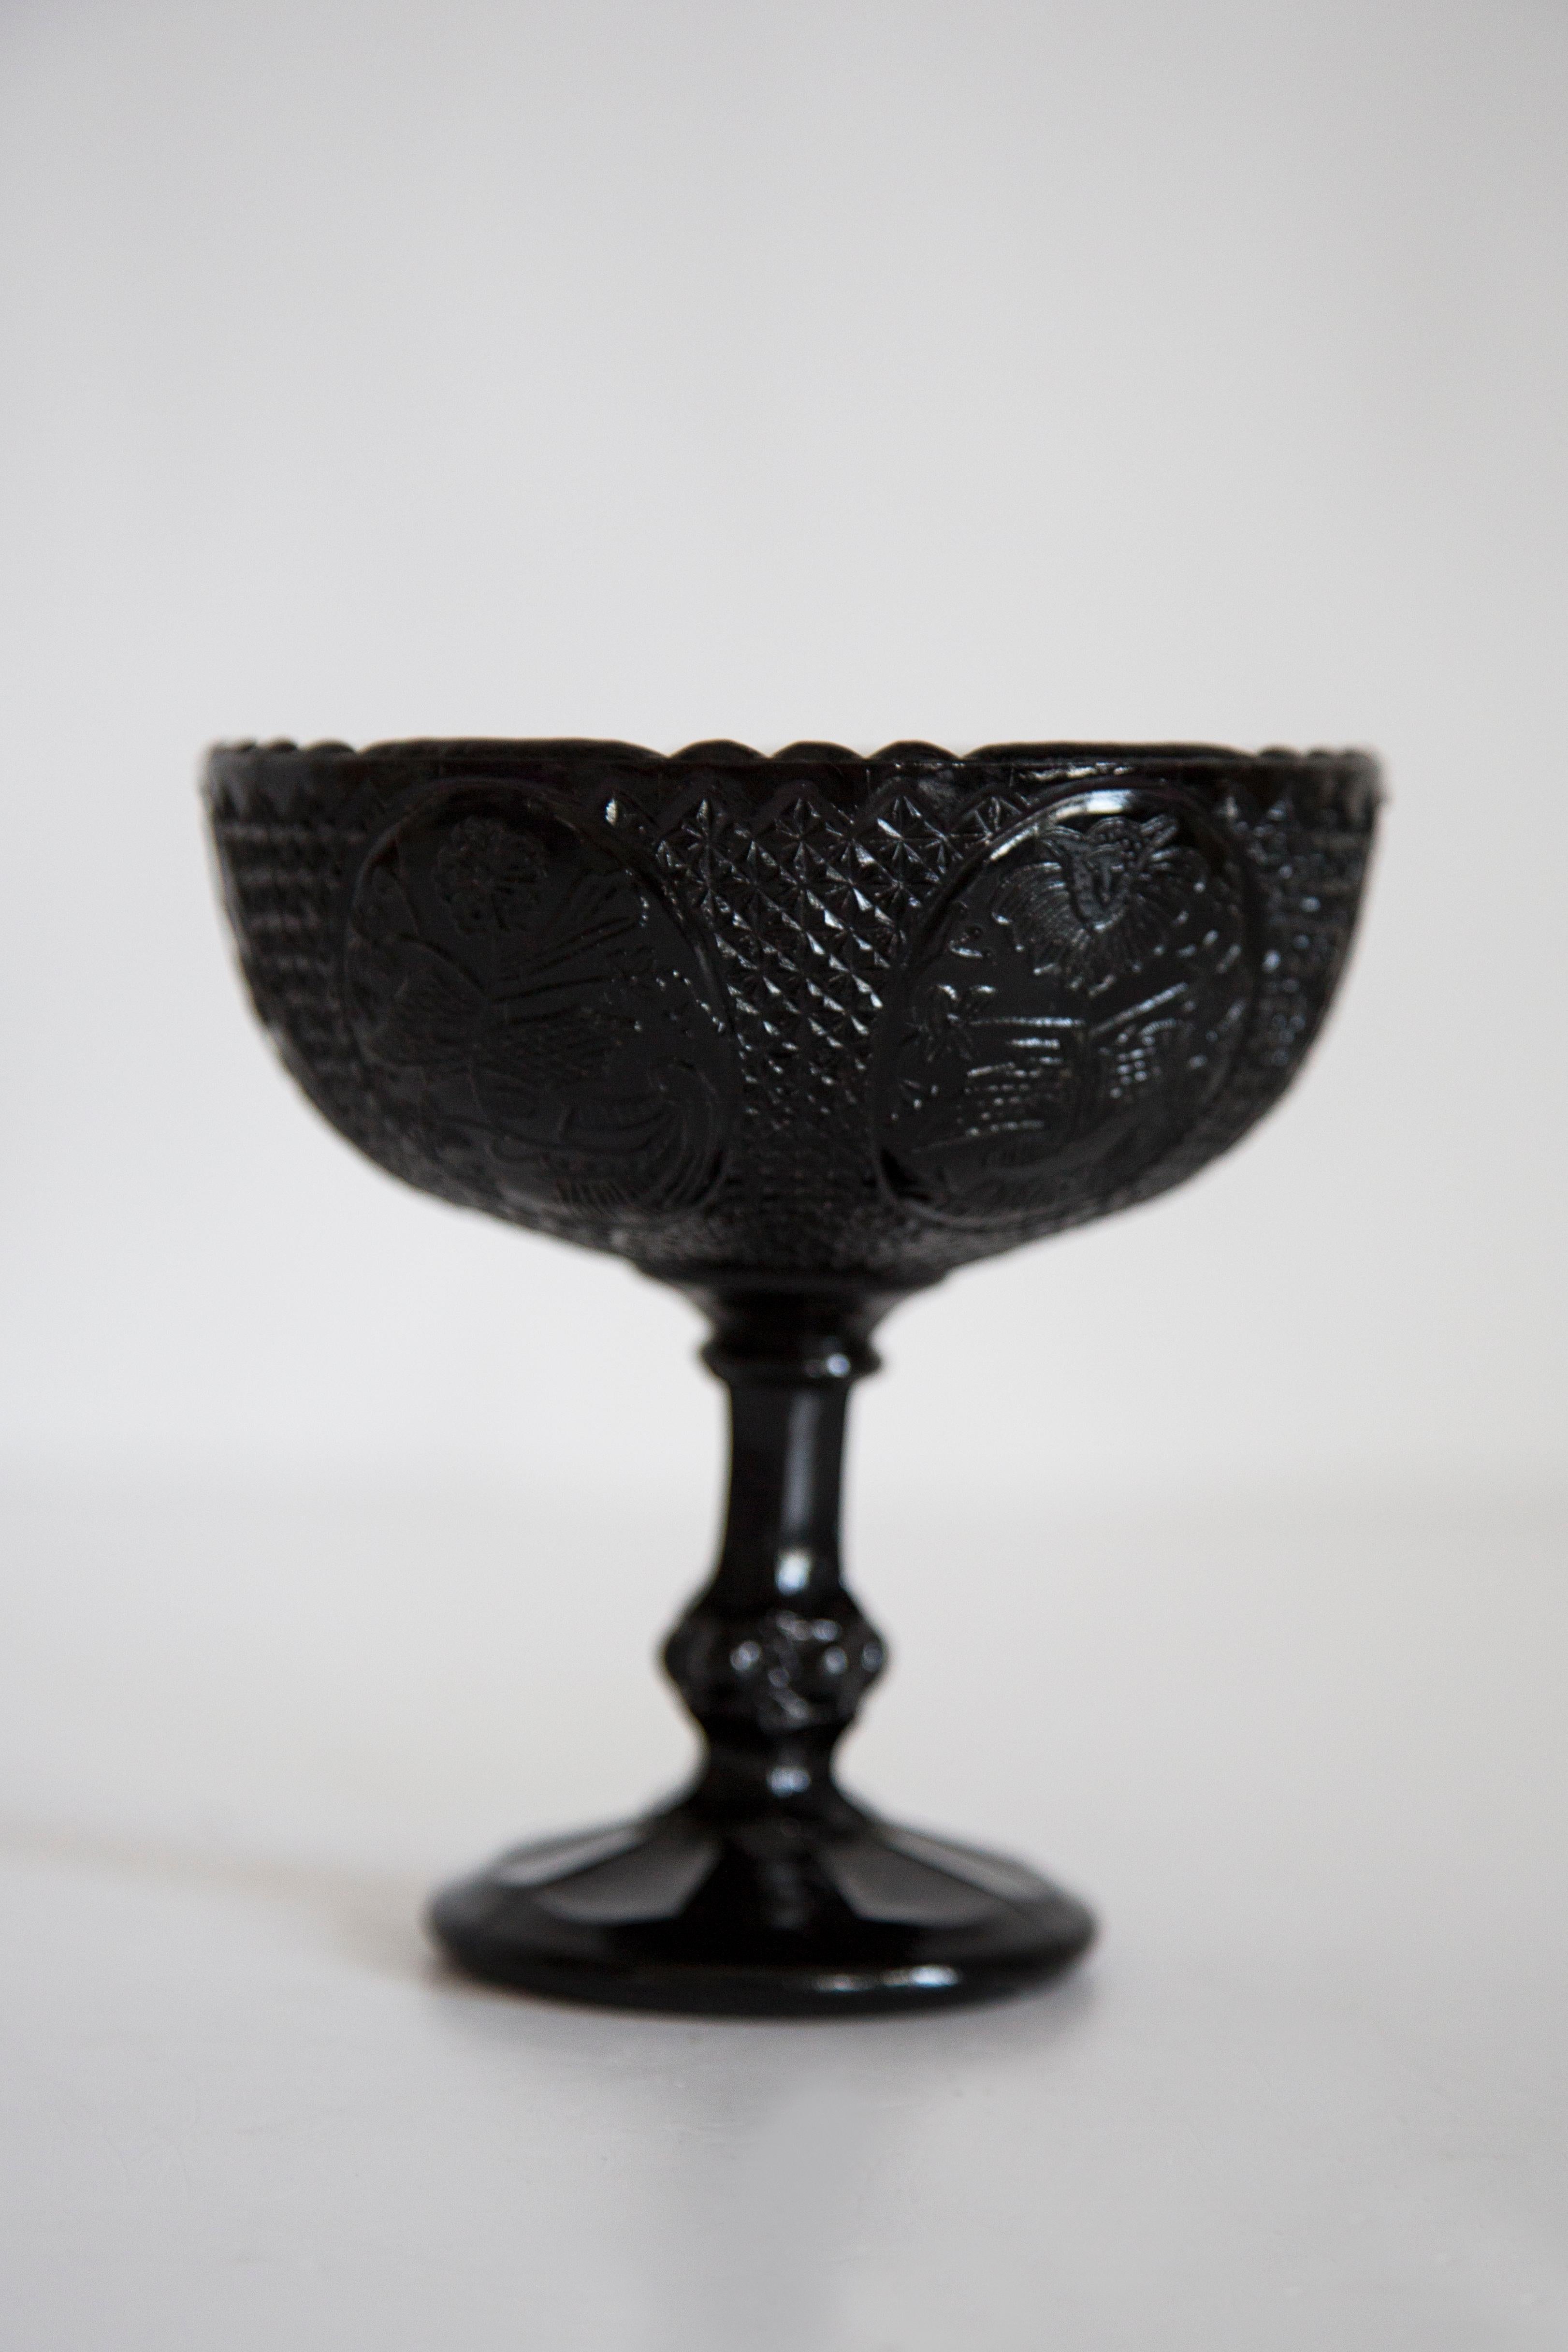 Schöner dekorativer schwarzer Glasteller/Schüssel aus Italien. Teller ist in sehr gutem Vintage-Zustand, keine Schäden oder Risse. Original Glas. Einzigartiges Stück für jeden Tisch und jede Einrichtung! Nur ein Stück verfügbar.